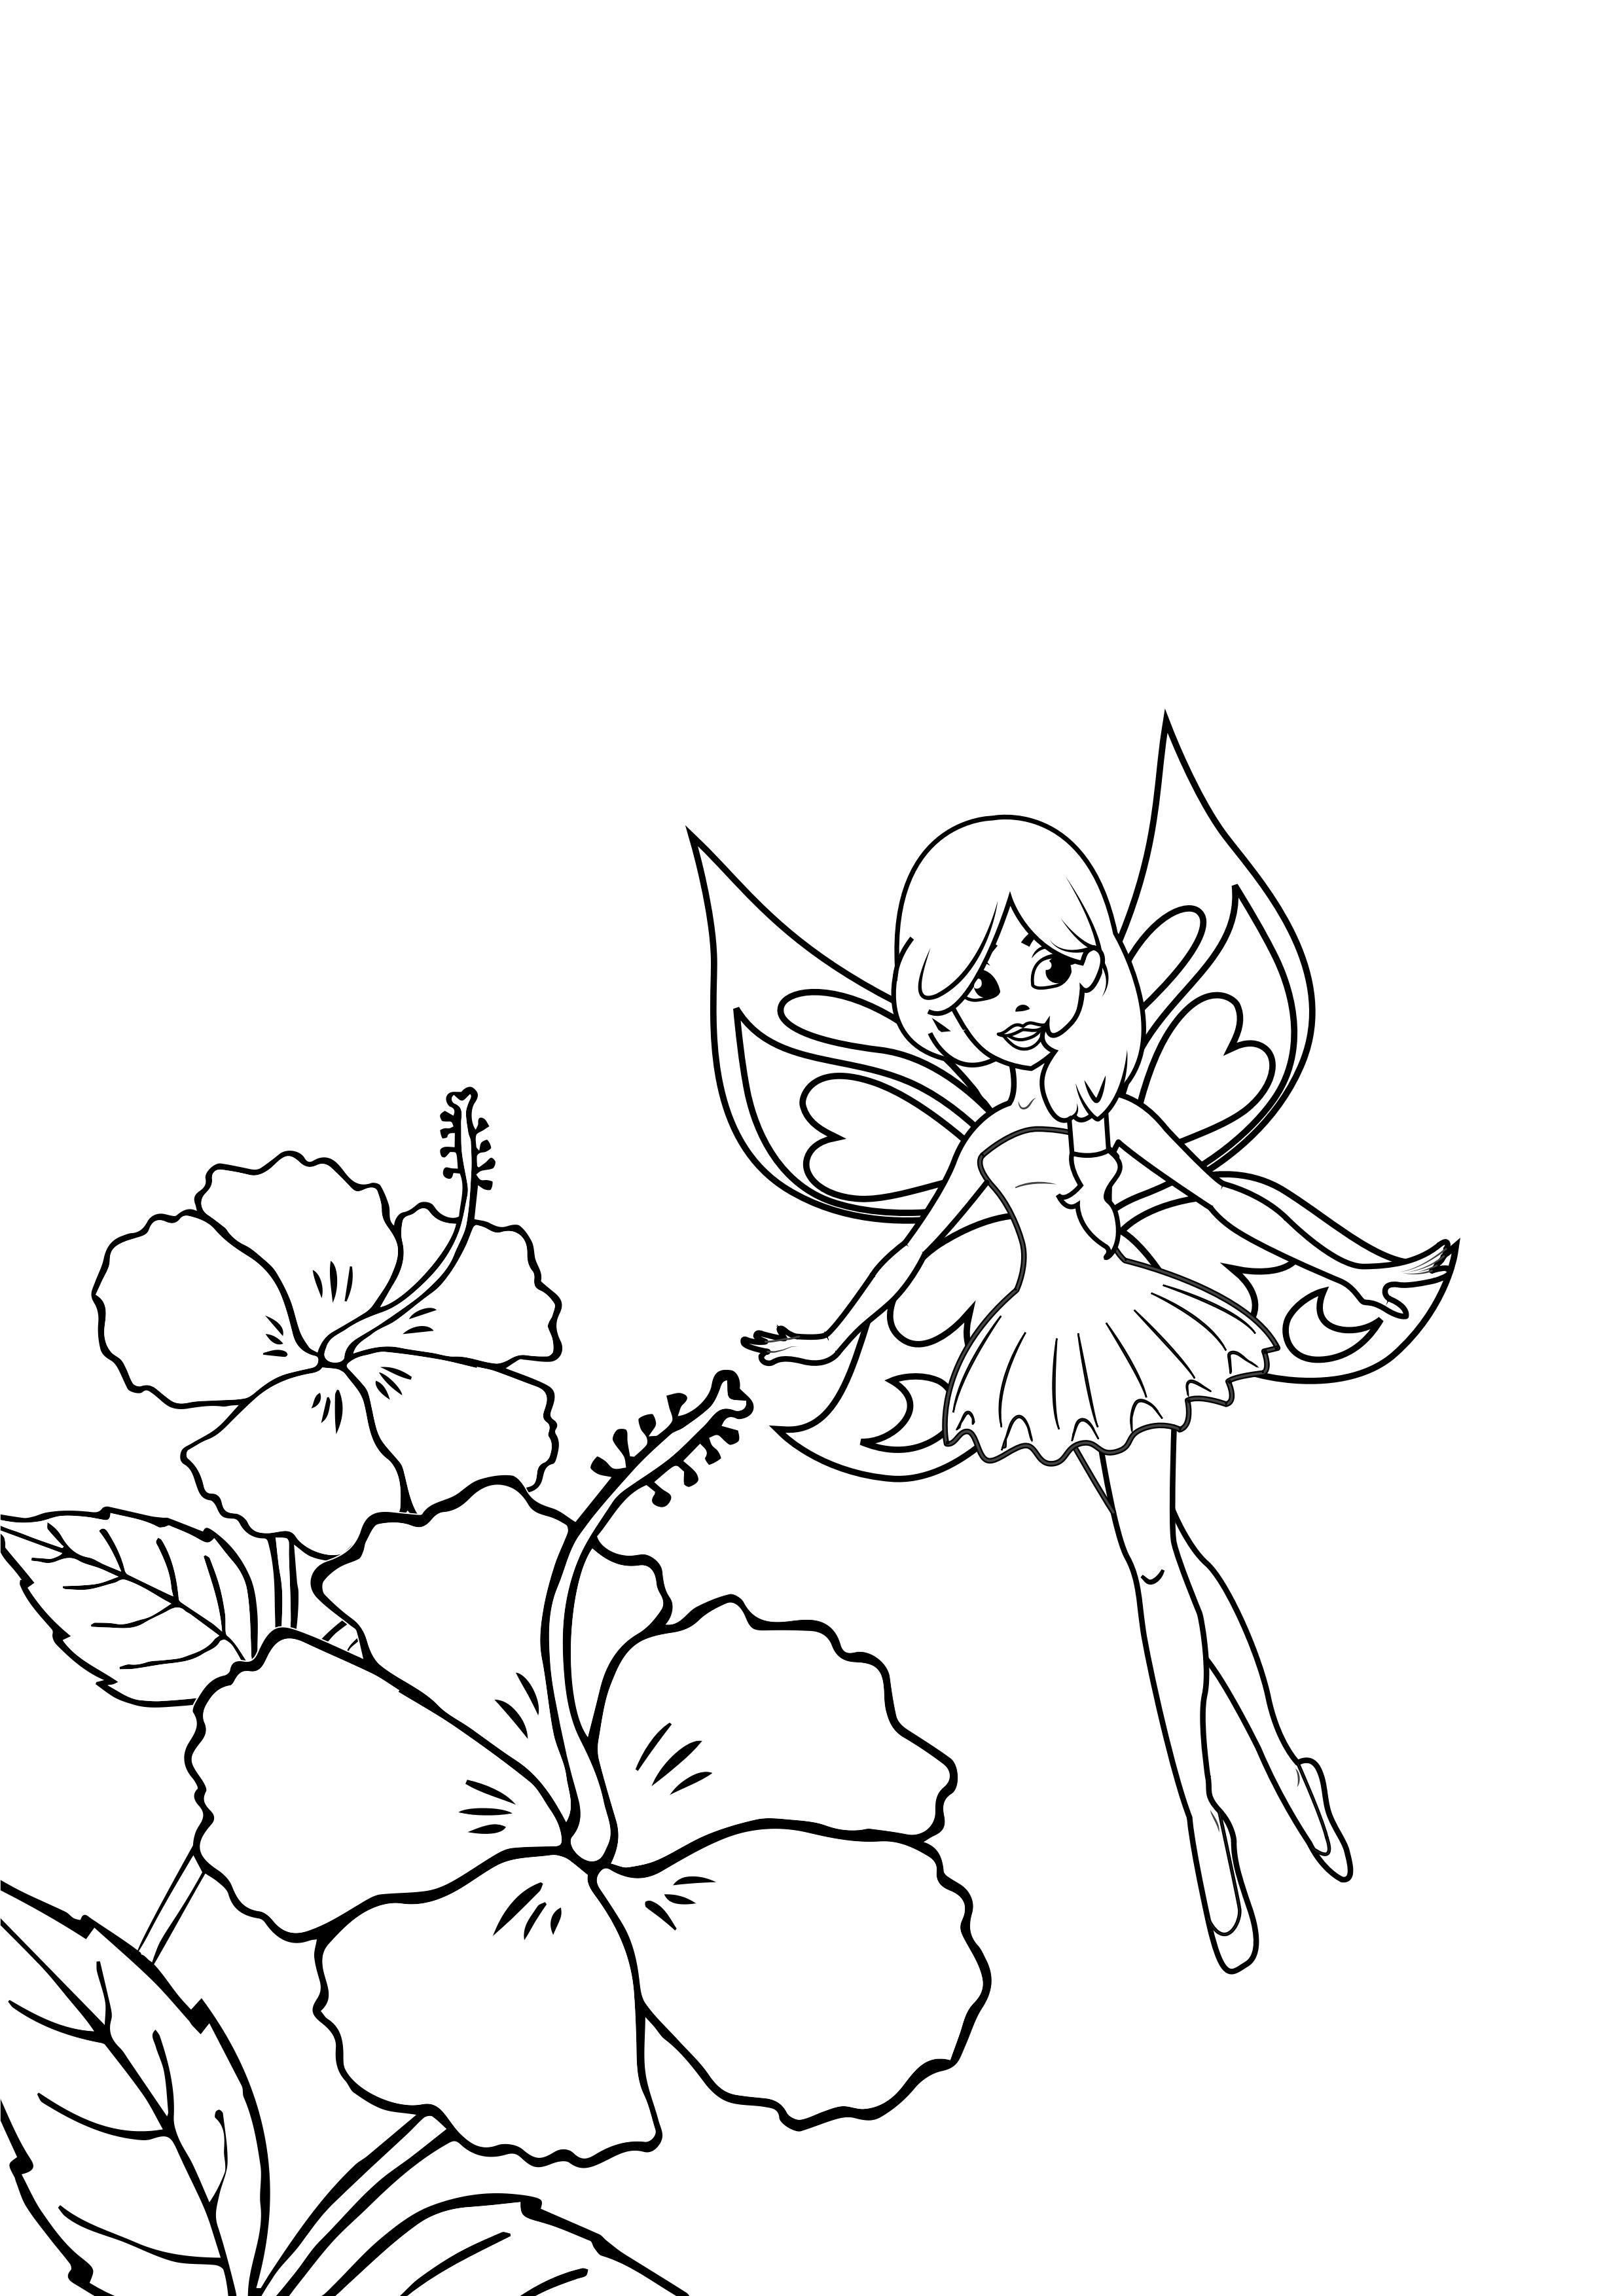 Dibujo para colorear hada con flores - Dibujos Para Imprimir Gratis - Img  31622